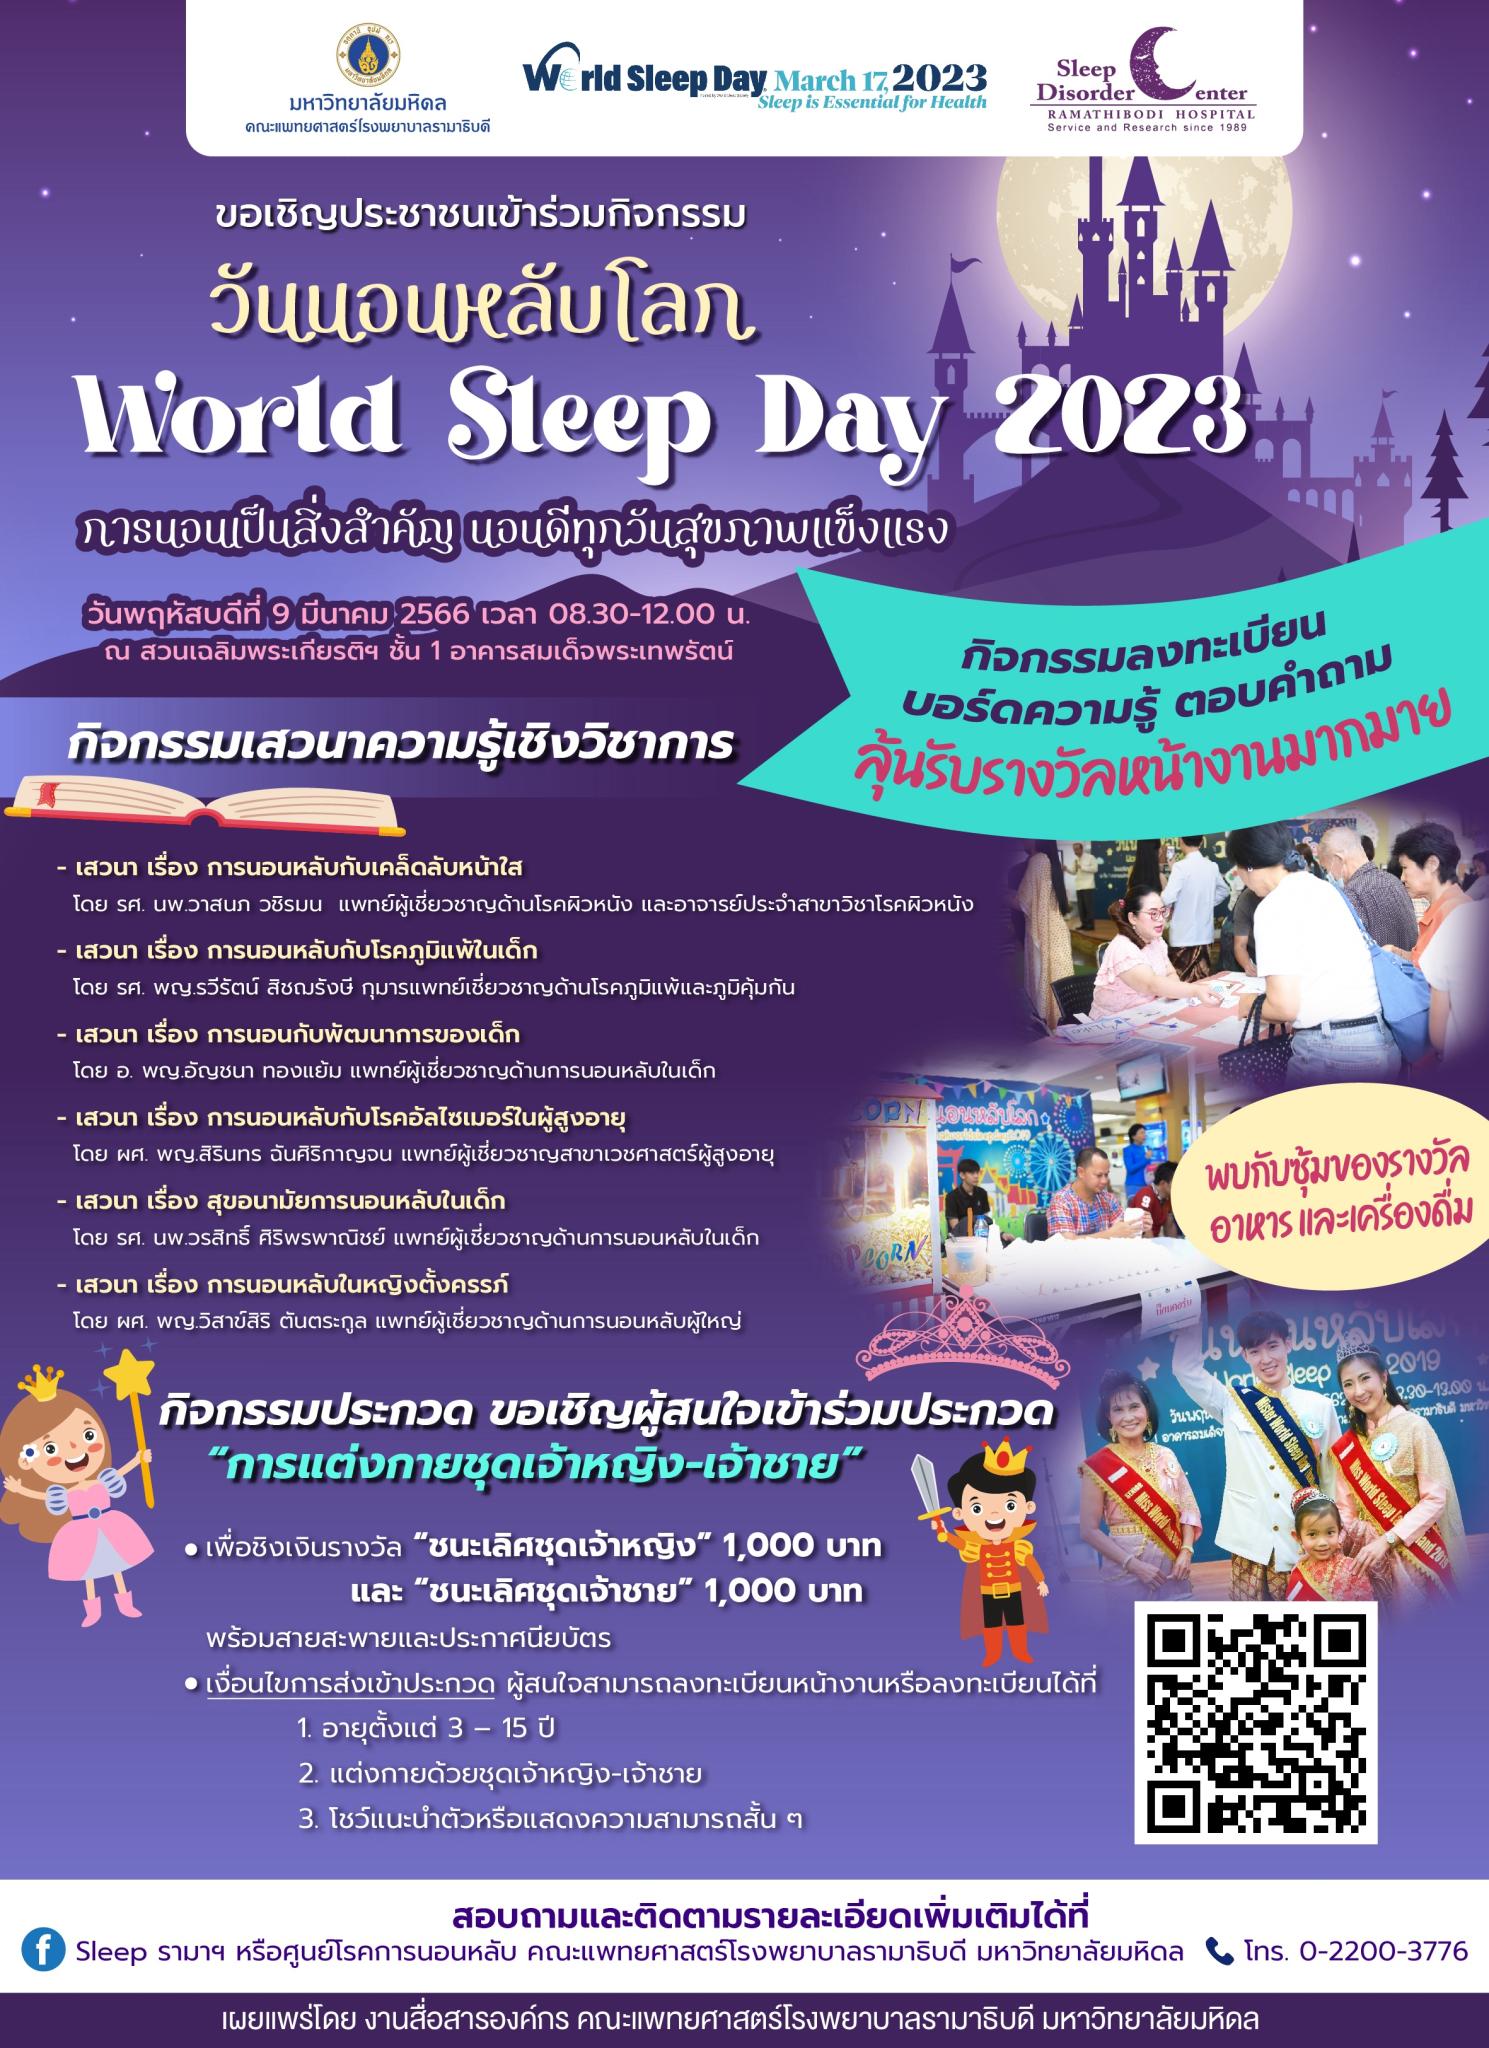 ขอเชิญชวนประชาชนเข้าร่วมกิจกรรมวันนอนหลับโลก World Sleep Day 2023 "การนอนเป็นสิ่งสำคัญ นอนดีทุกวันสุขภาพแข็งแรง" 